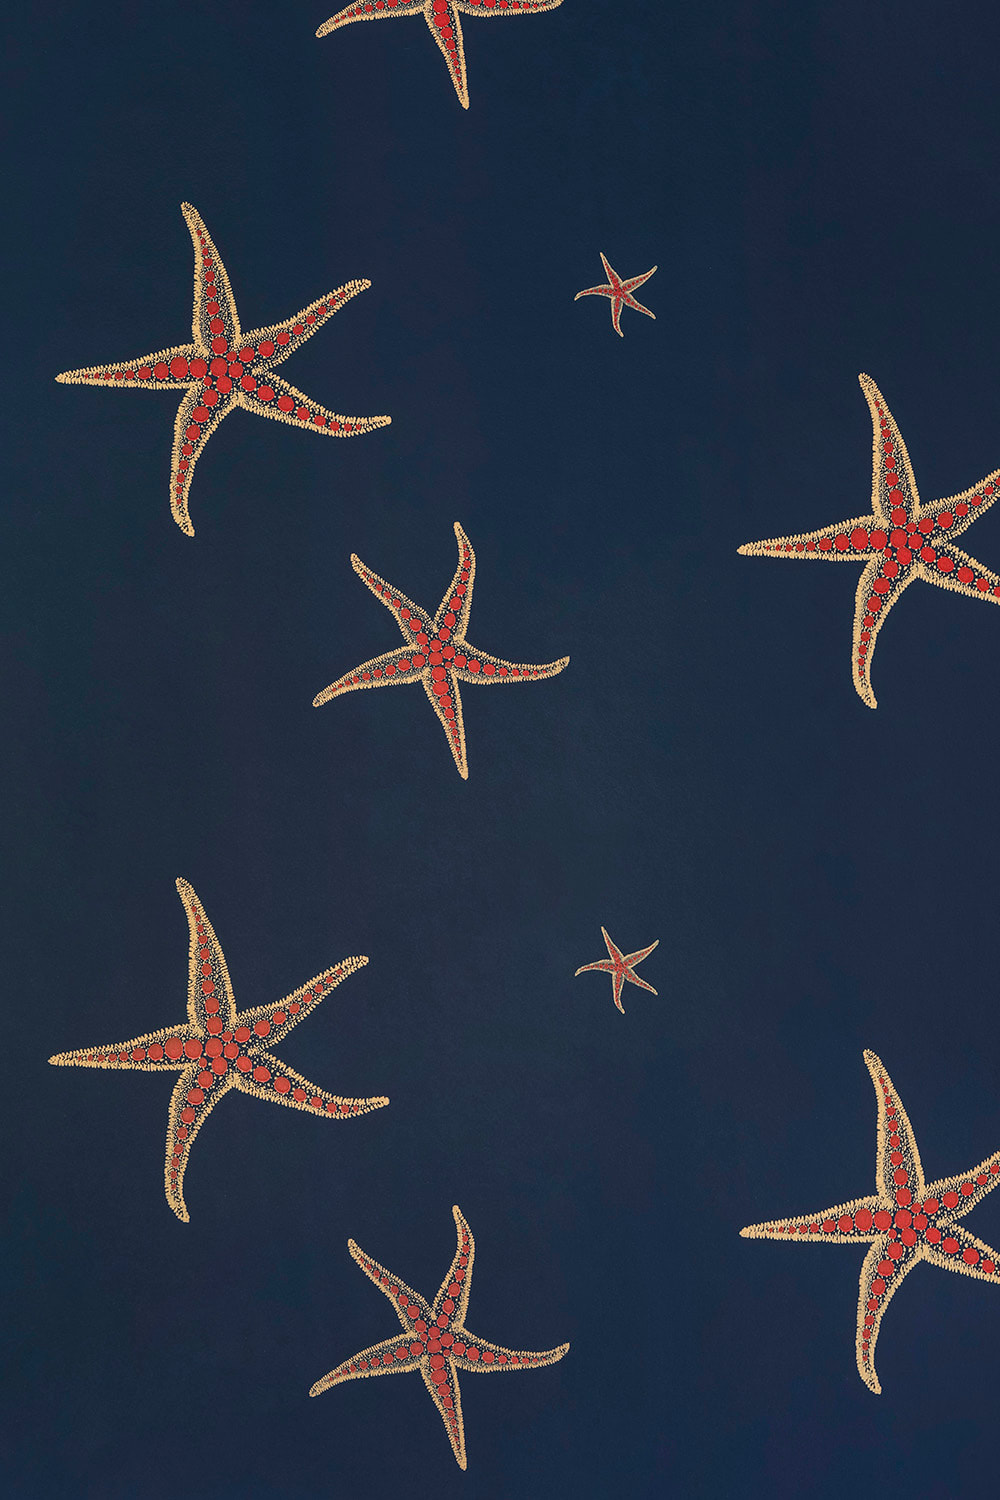 Premium Photo  Starfish on the beach wallpaper